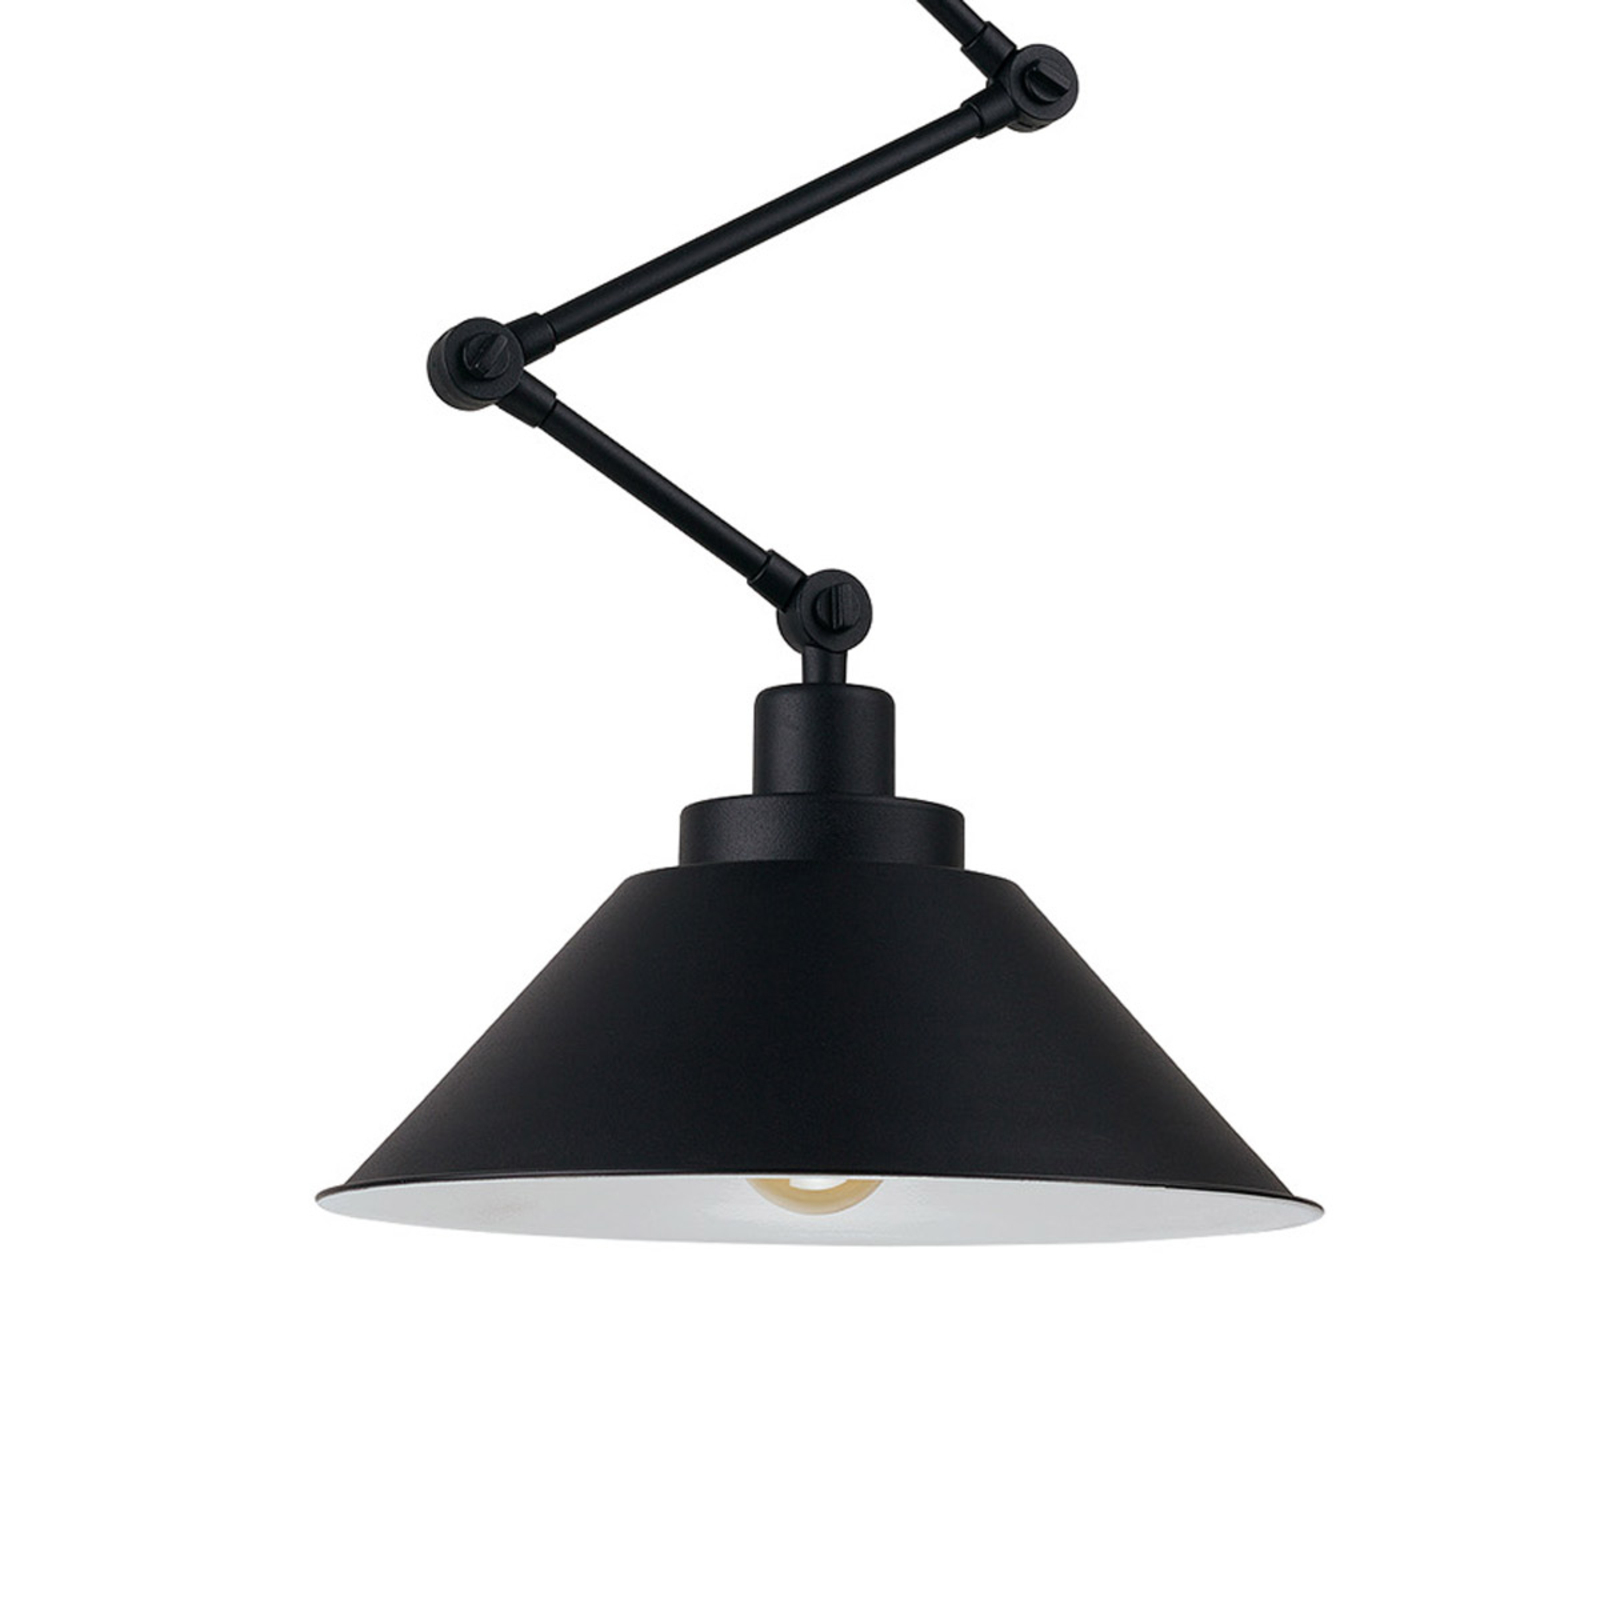 Hanglamp Pantograph met scharnierende ophanging, zwart